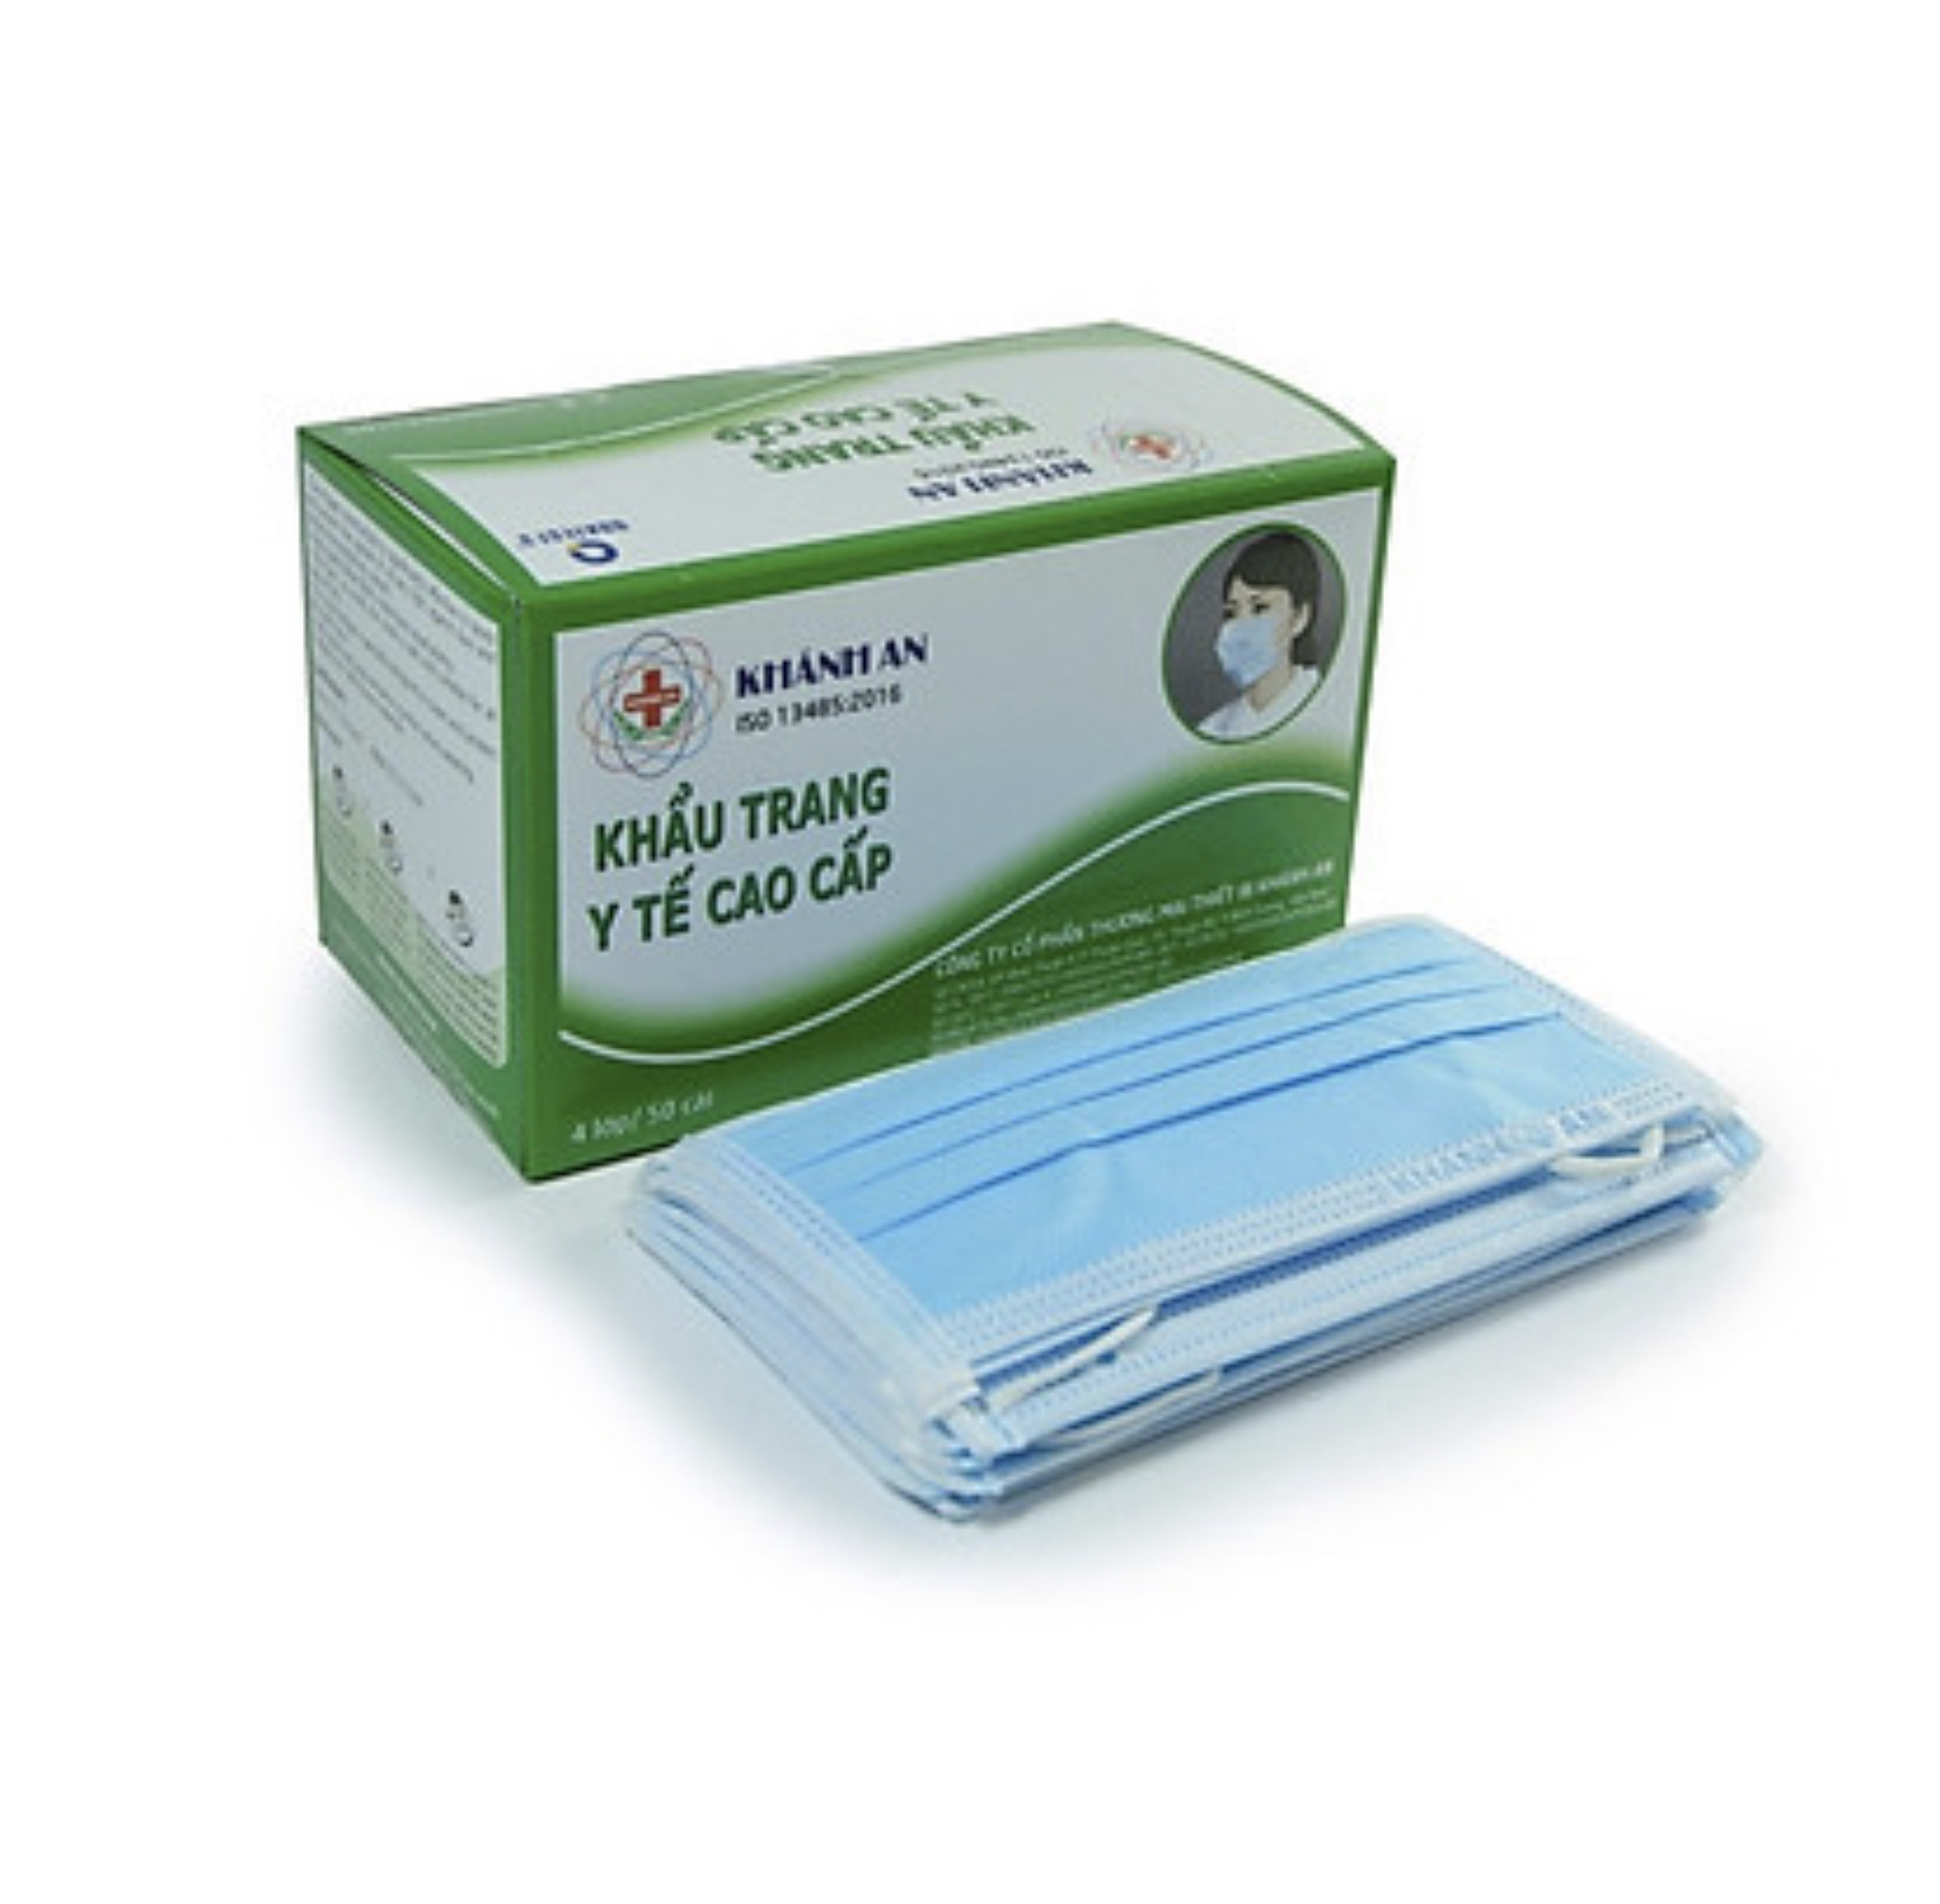 Khẩu trang y tế Khánh An 4 lớp kháng khuẩn hộp 50 cái màu xanh